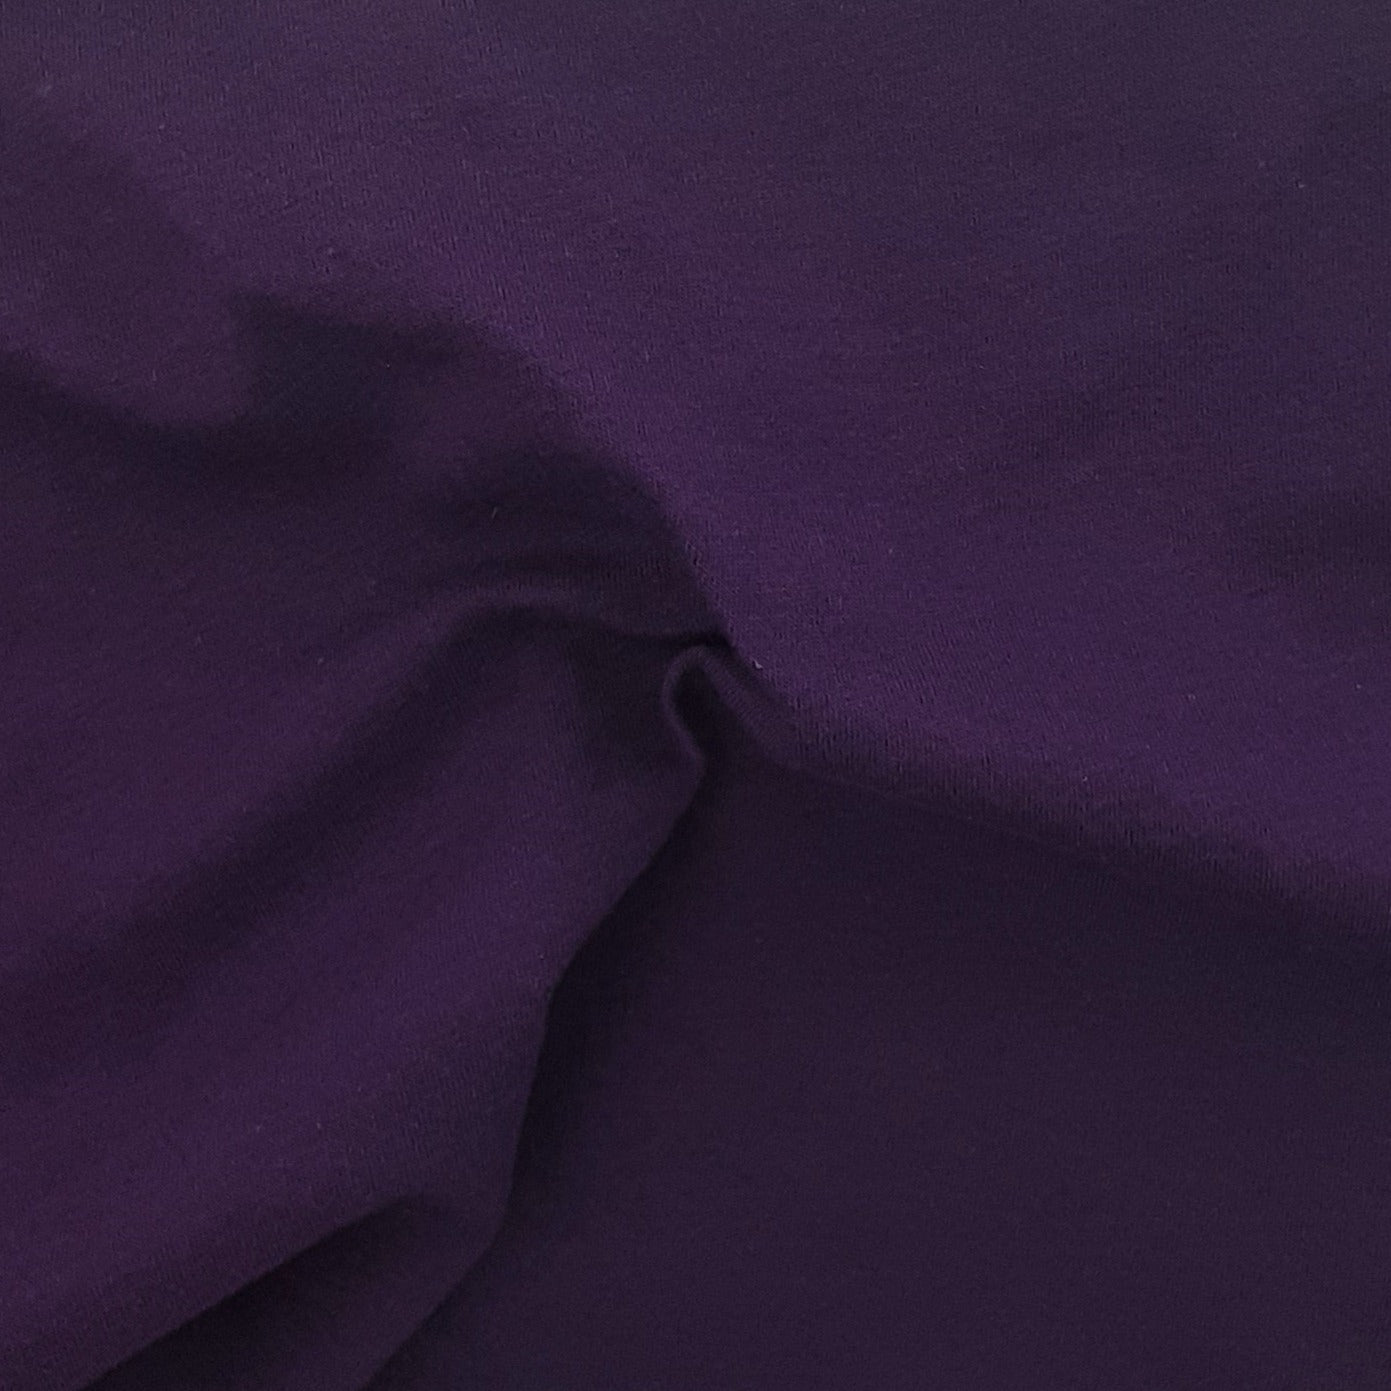 Eggplant #S63 8oz. Cotton/Lycra Jersey Knit Fabric - SKU 6827A